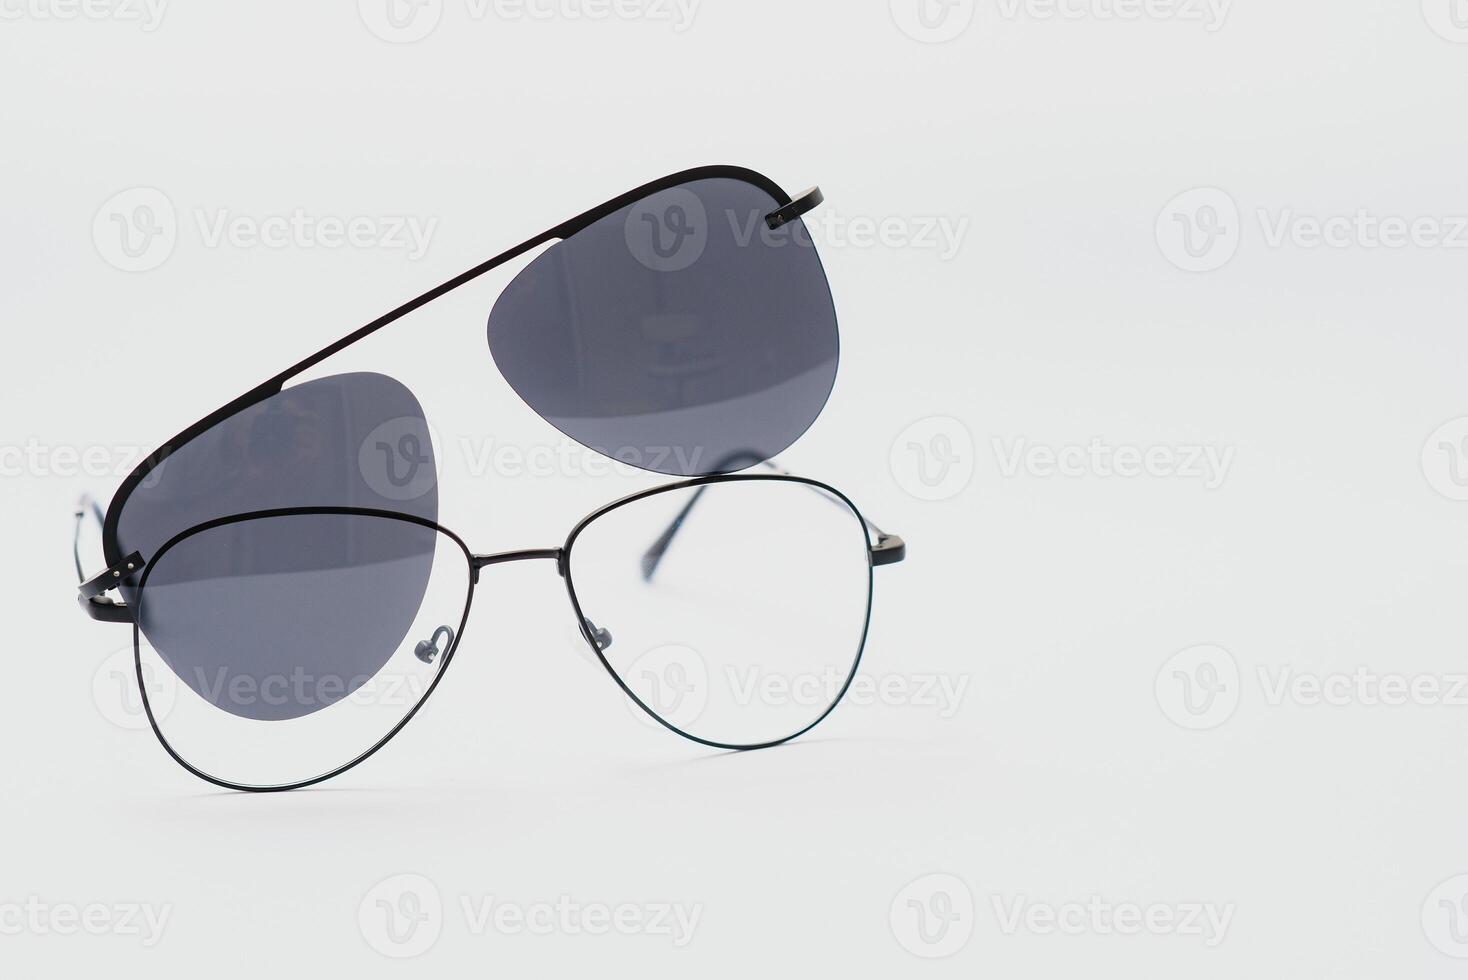 Sunglasses isolated on white background photo